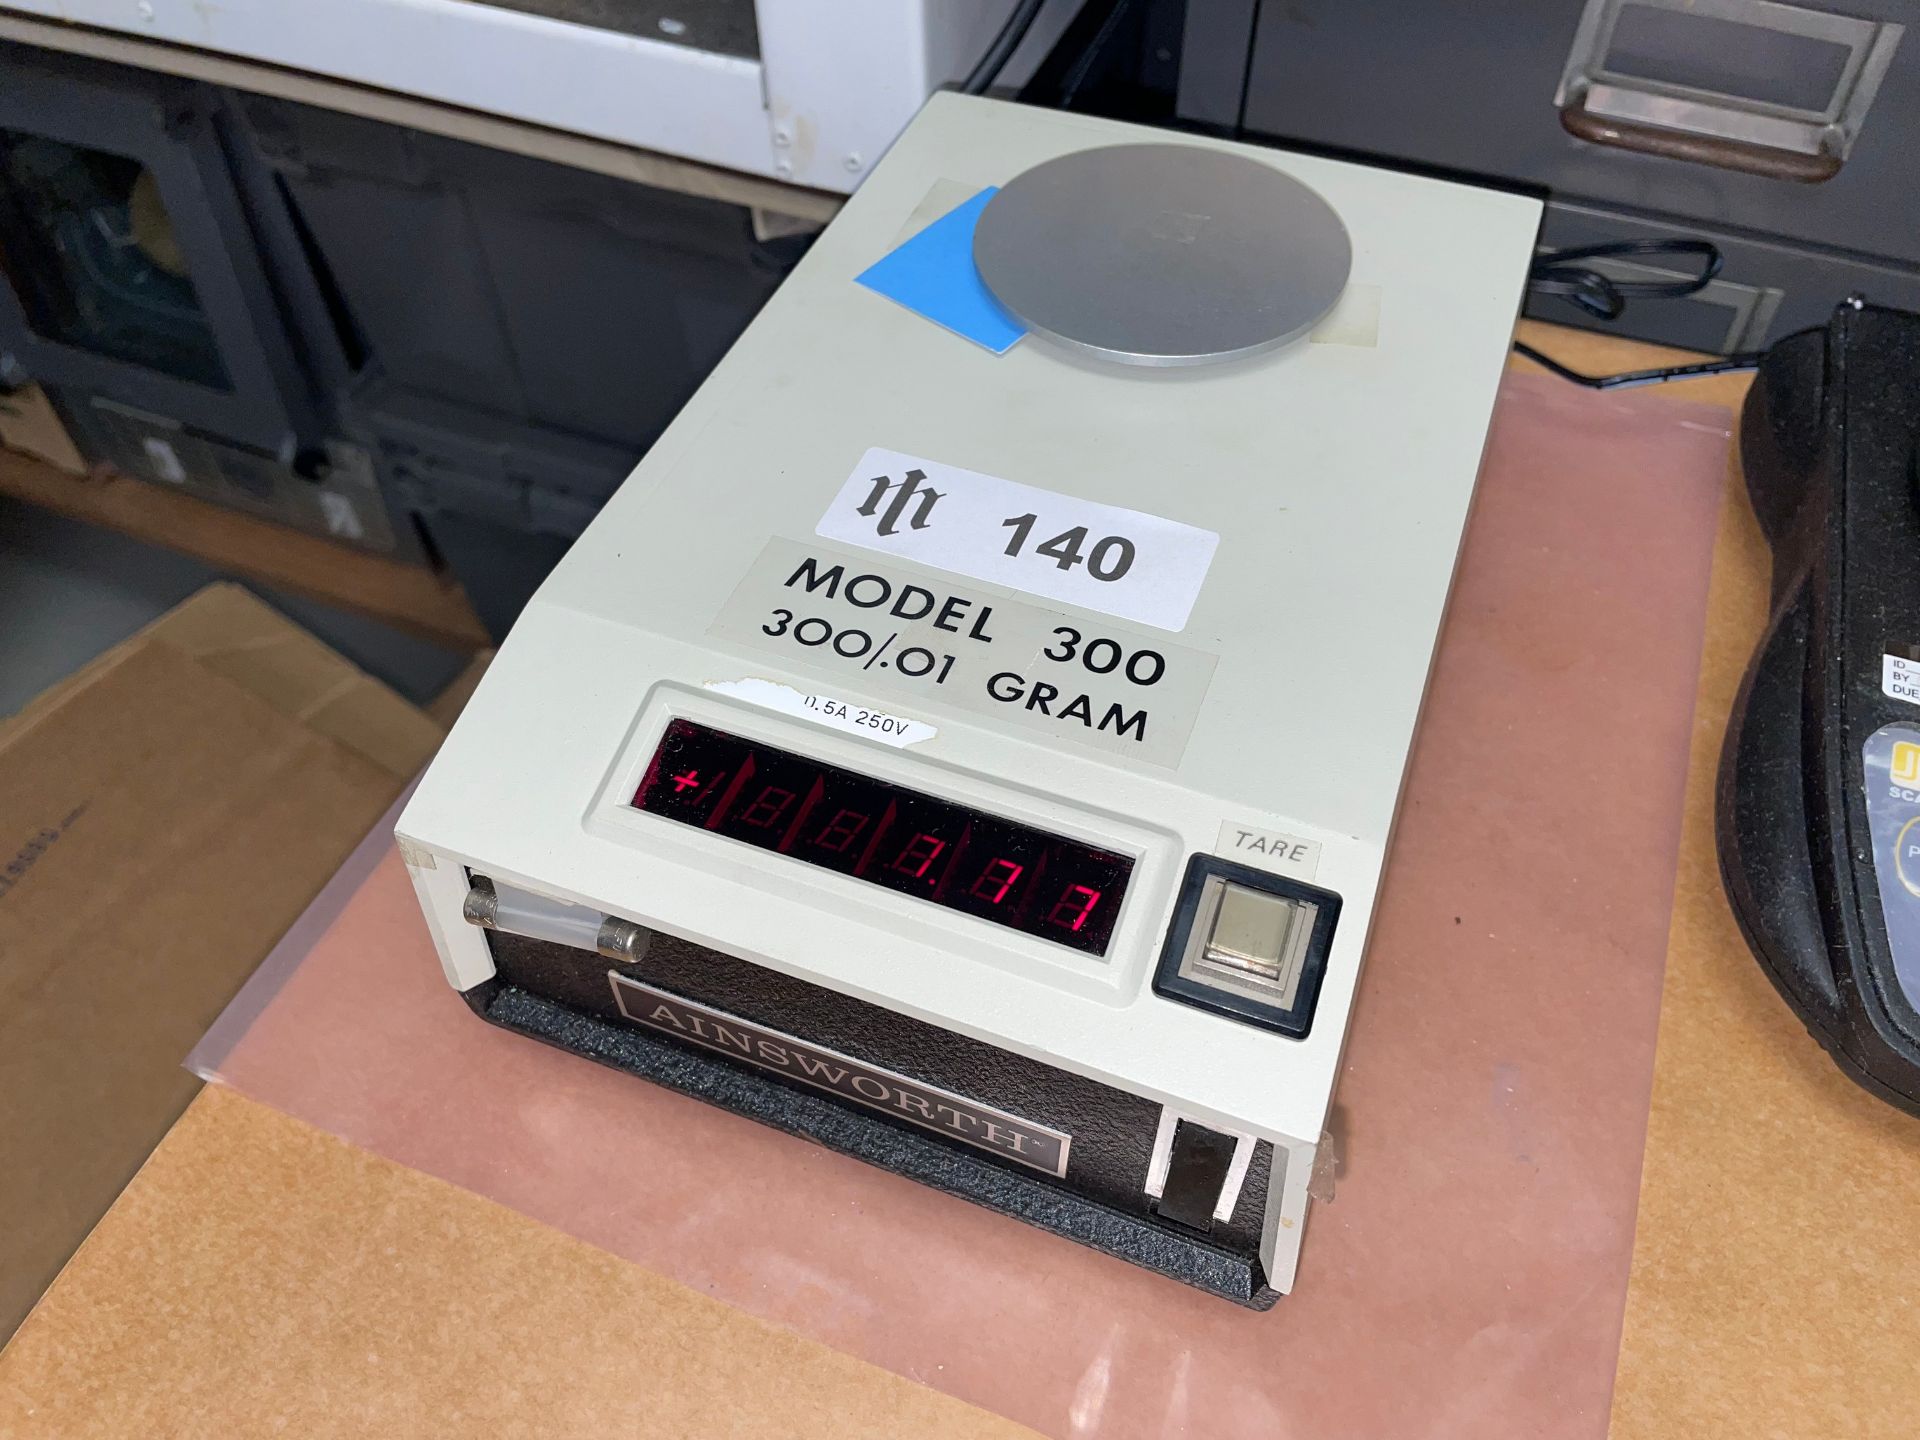 Ainsworth Mdl. 300 Digital Lab Scale